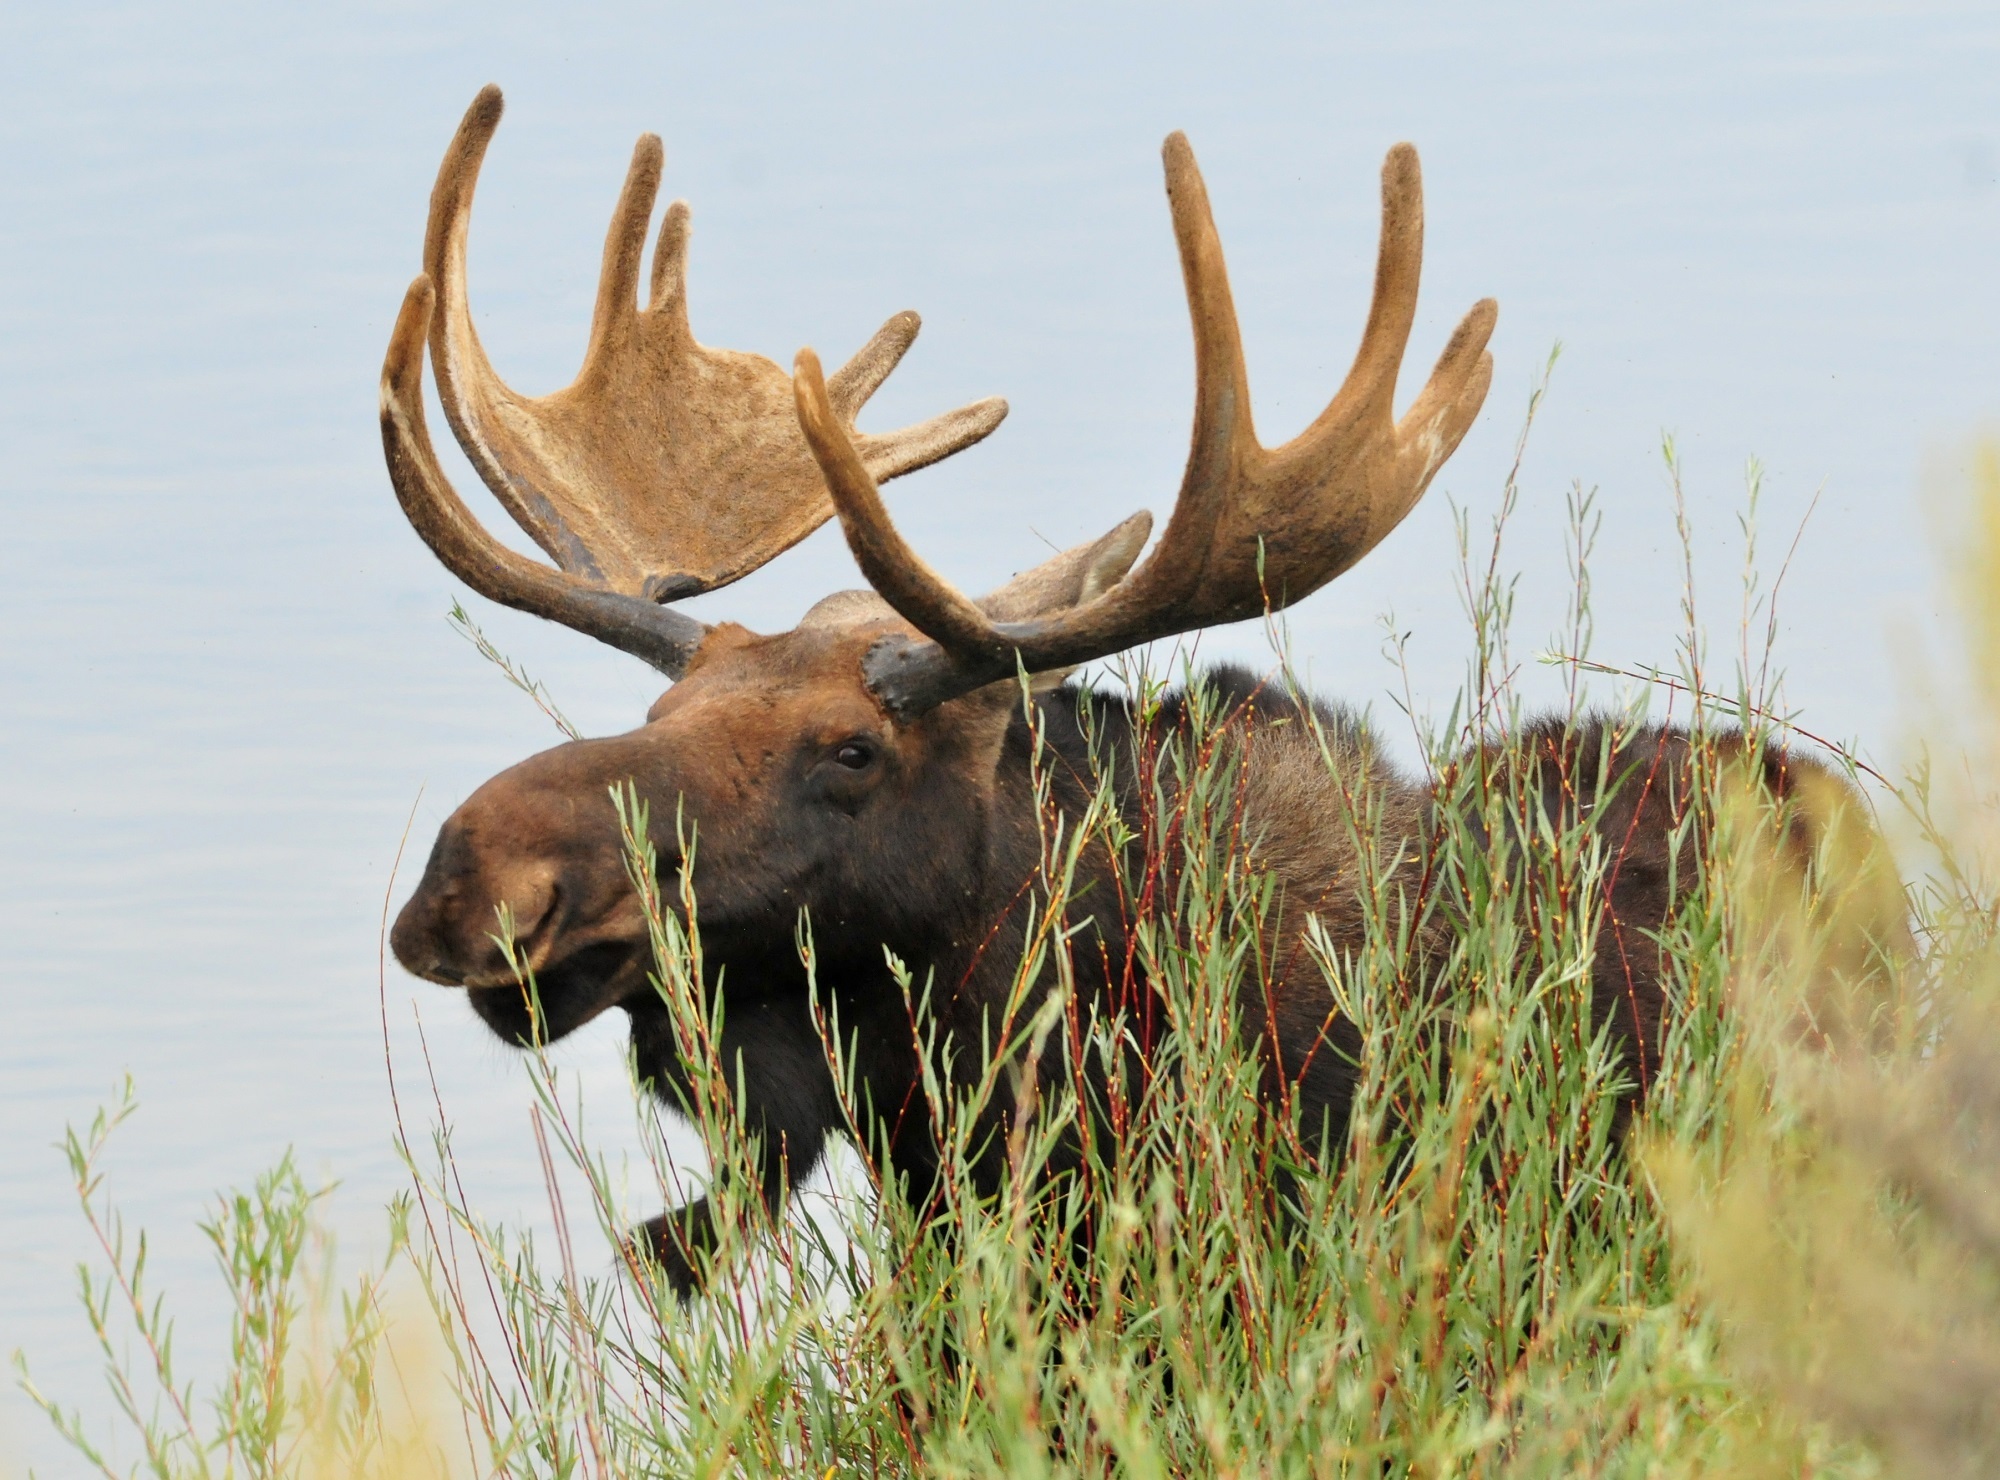 Horny moose photo